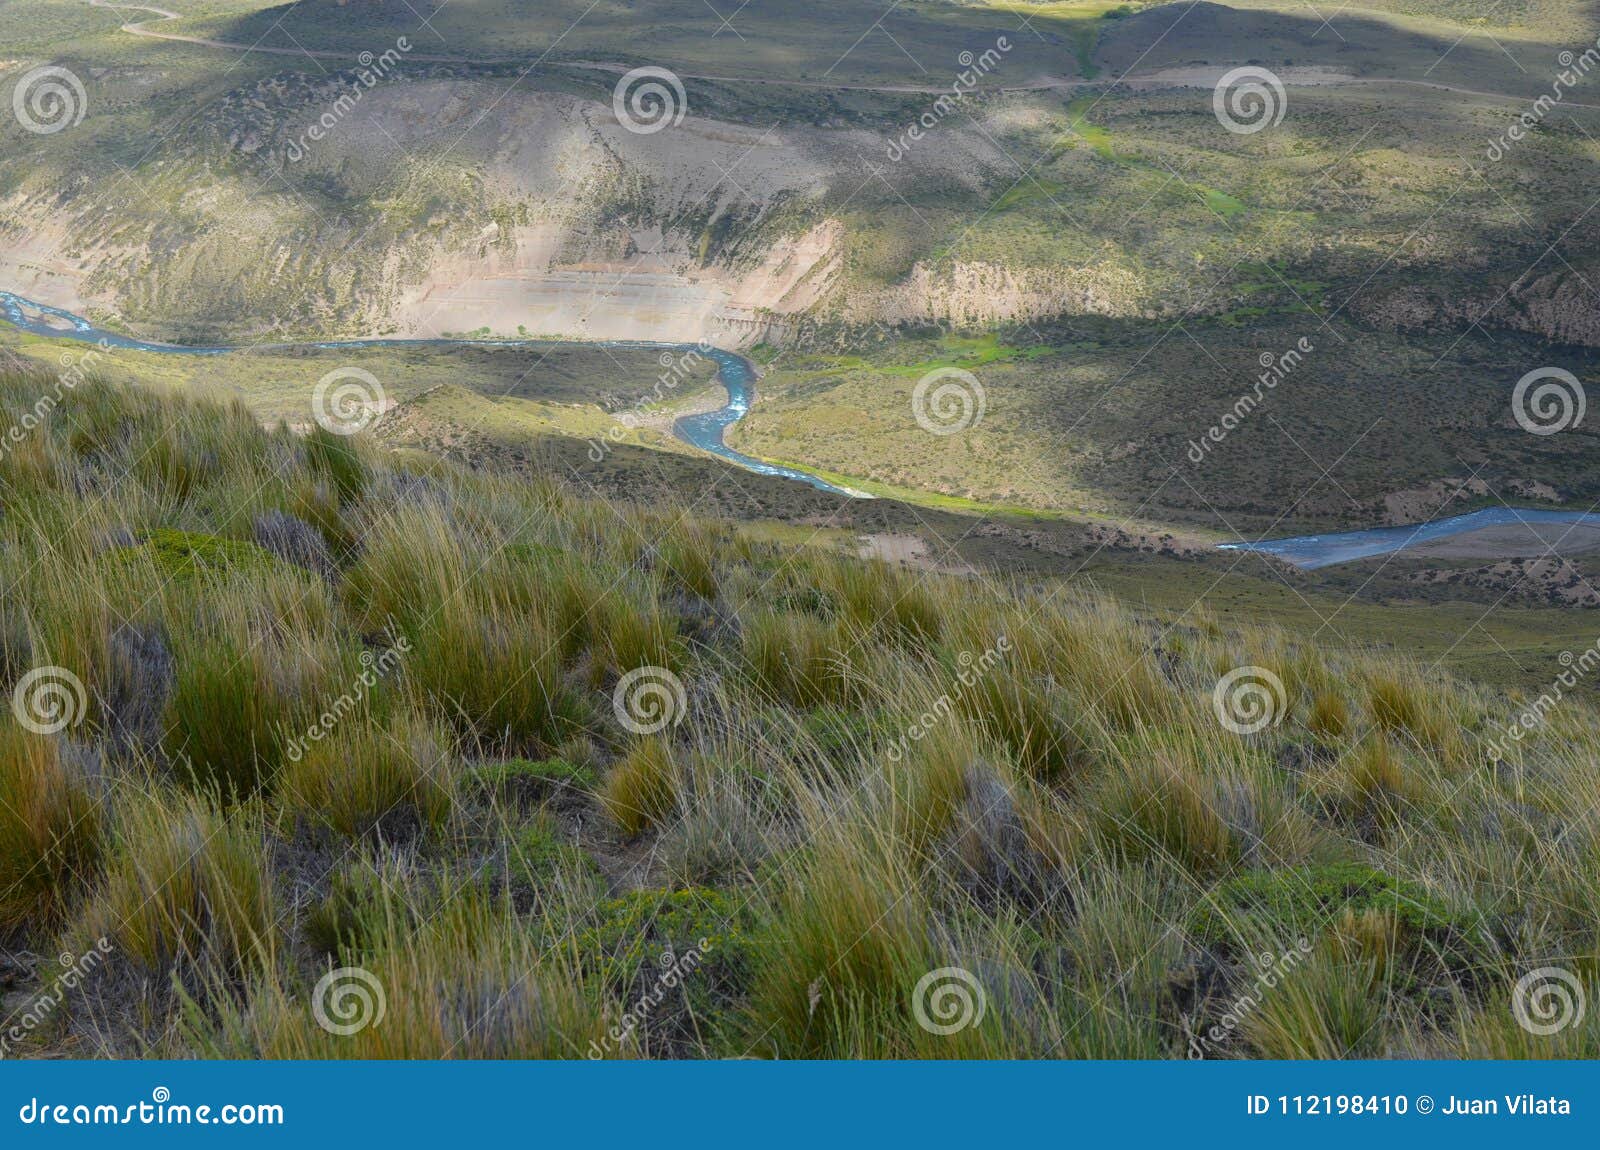 reserva nacional lago jeinimeni, near lago general carrera in southern chile